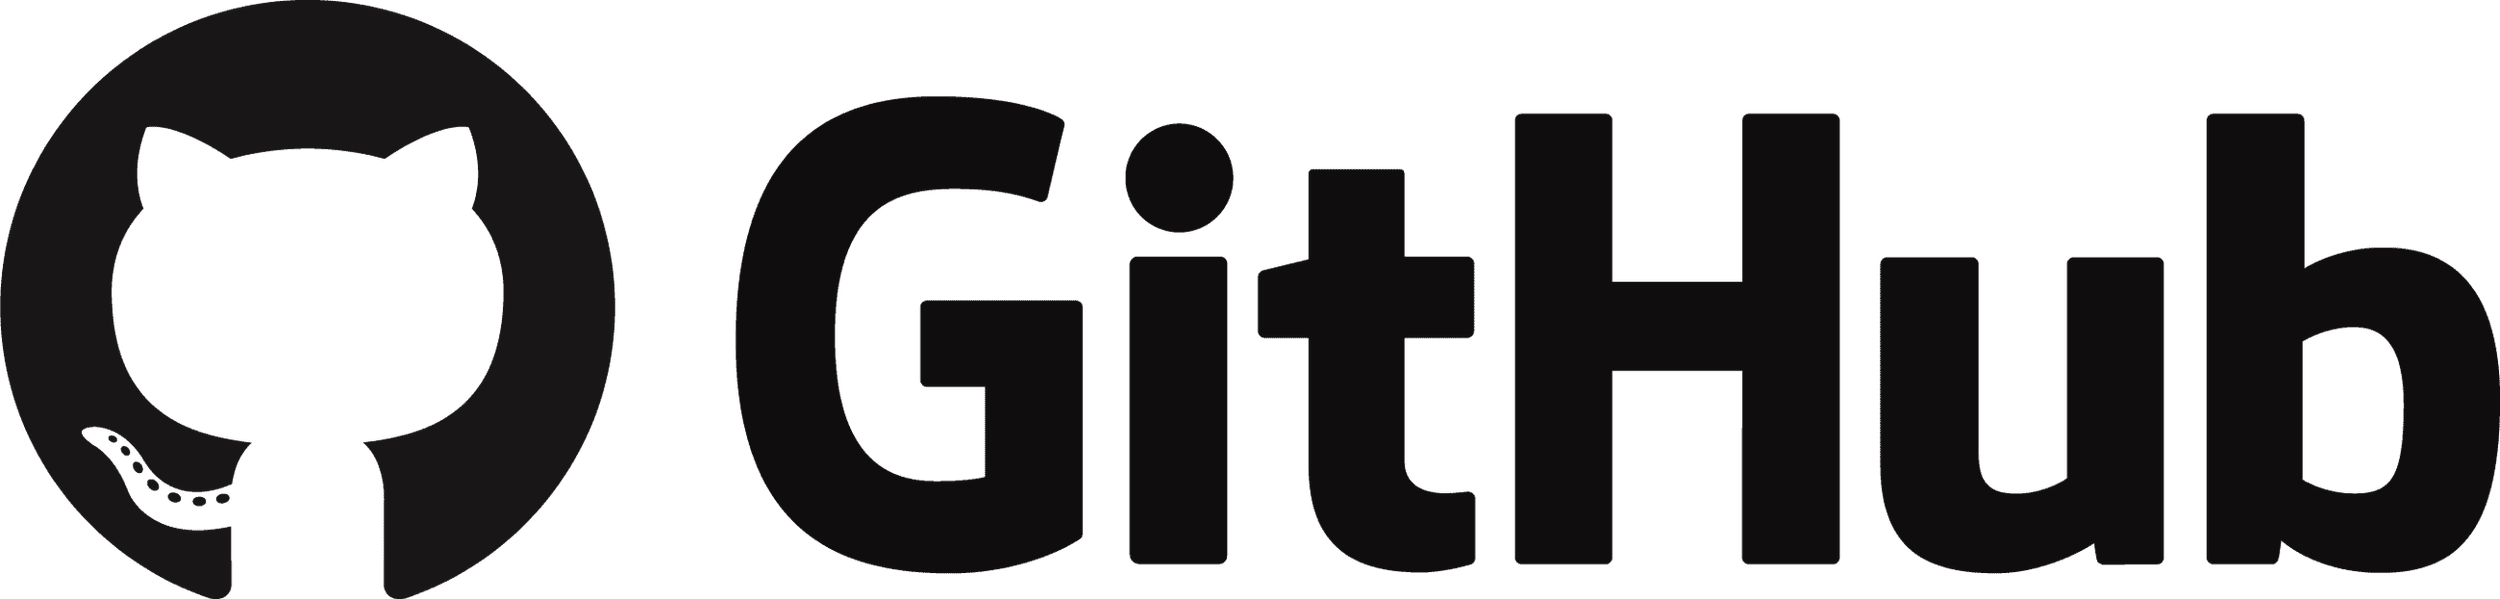 Github_logo_PNG2.png